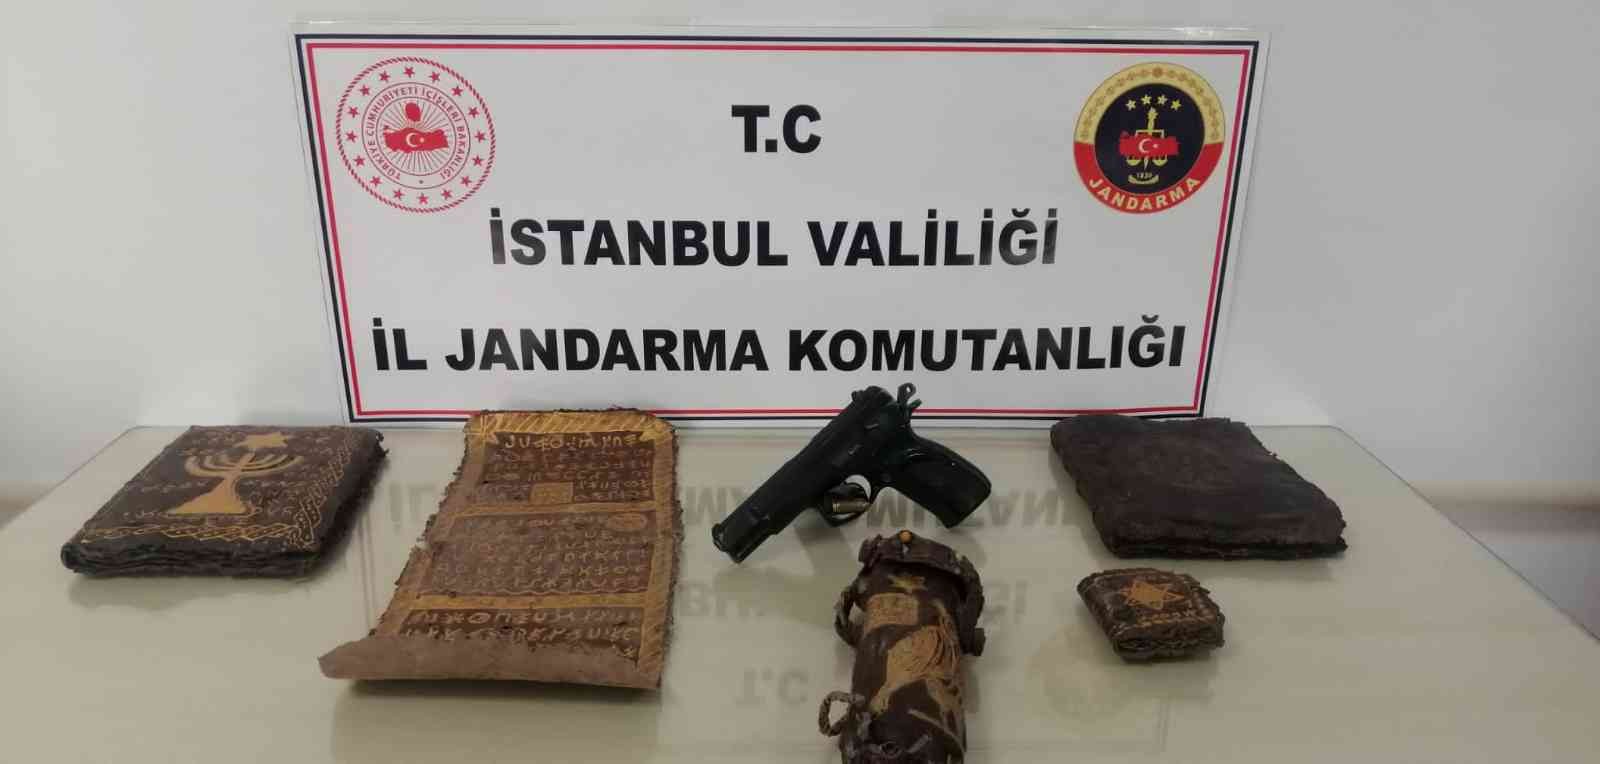 İstanbul’da jandarmadan tarihi eser kaçakçılığı operasyonu: 800 yıllık deri yazma eserler ele geçirildi #istanbul